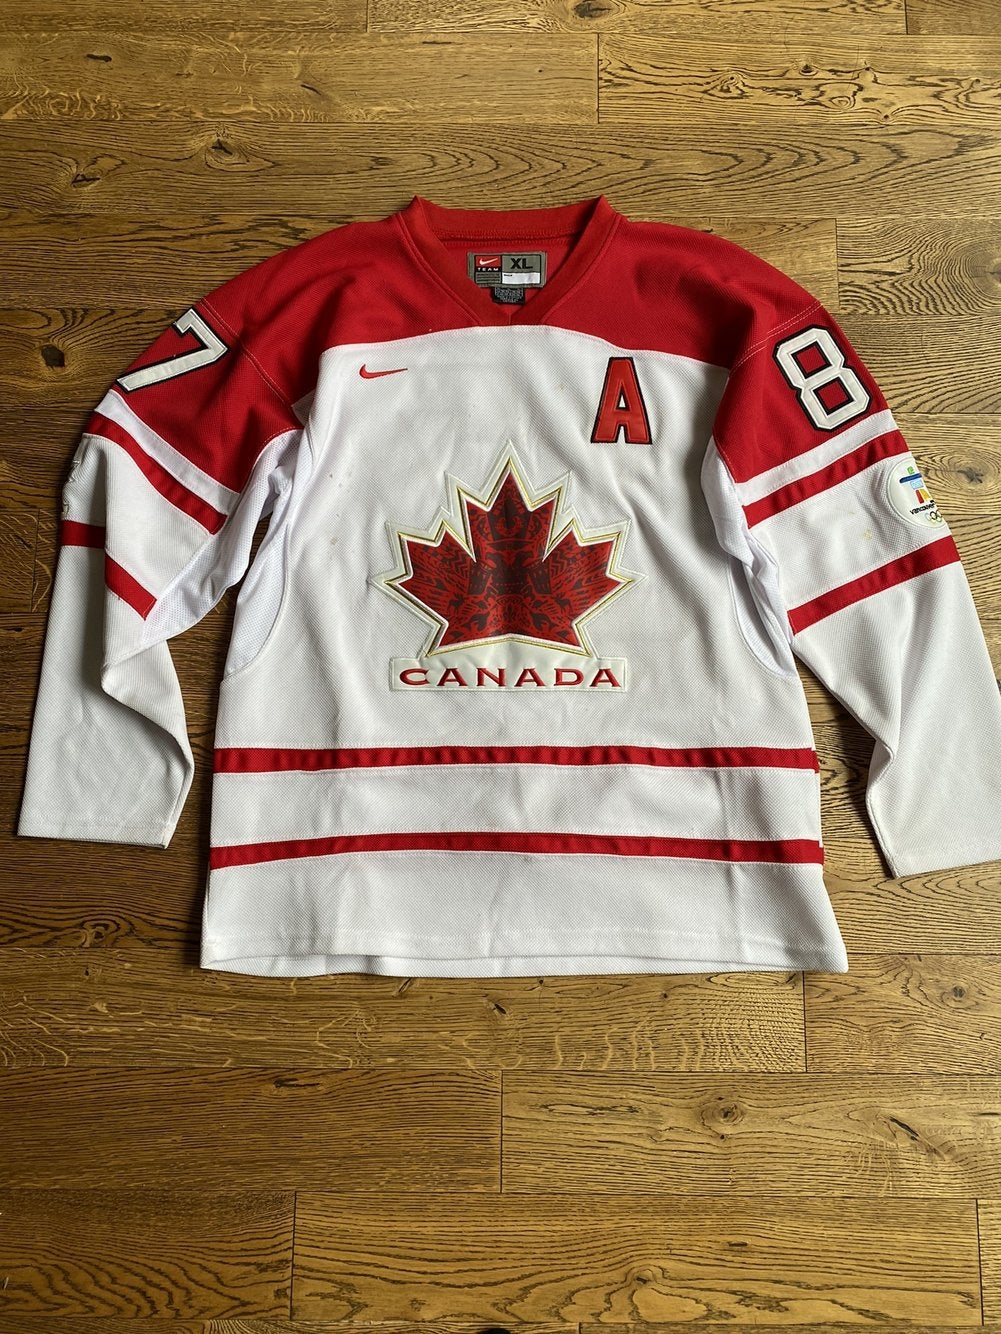 sidney crosby team canada jersey in Ontario - Kijiji Canada